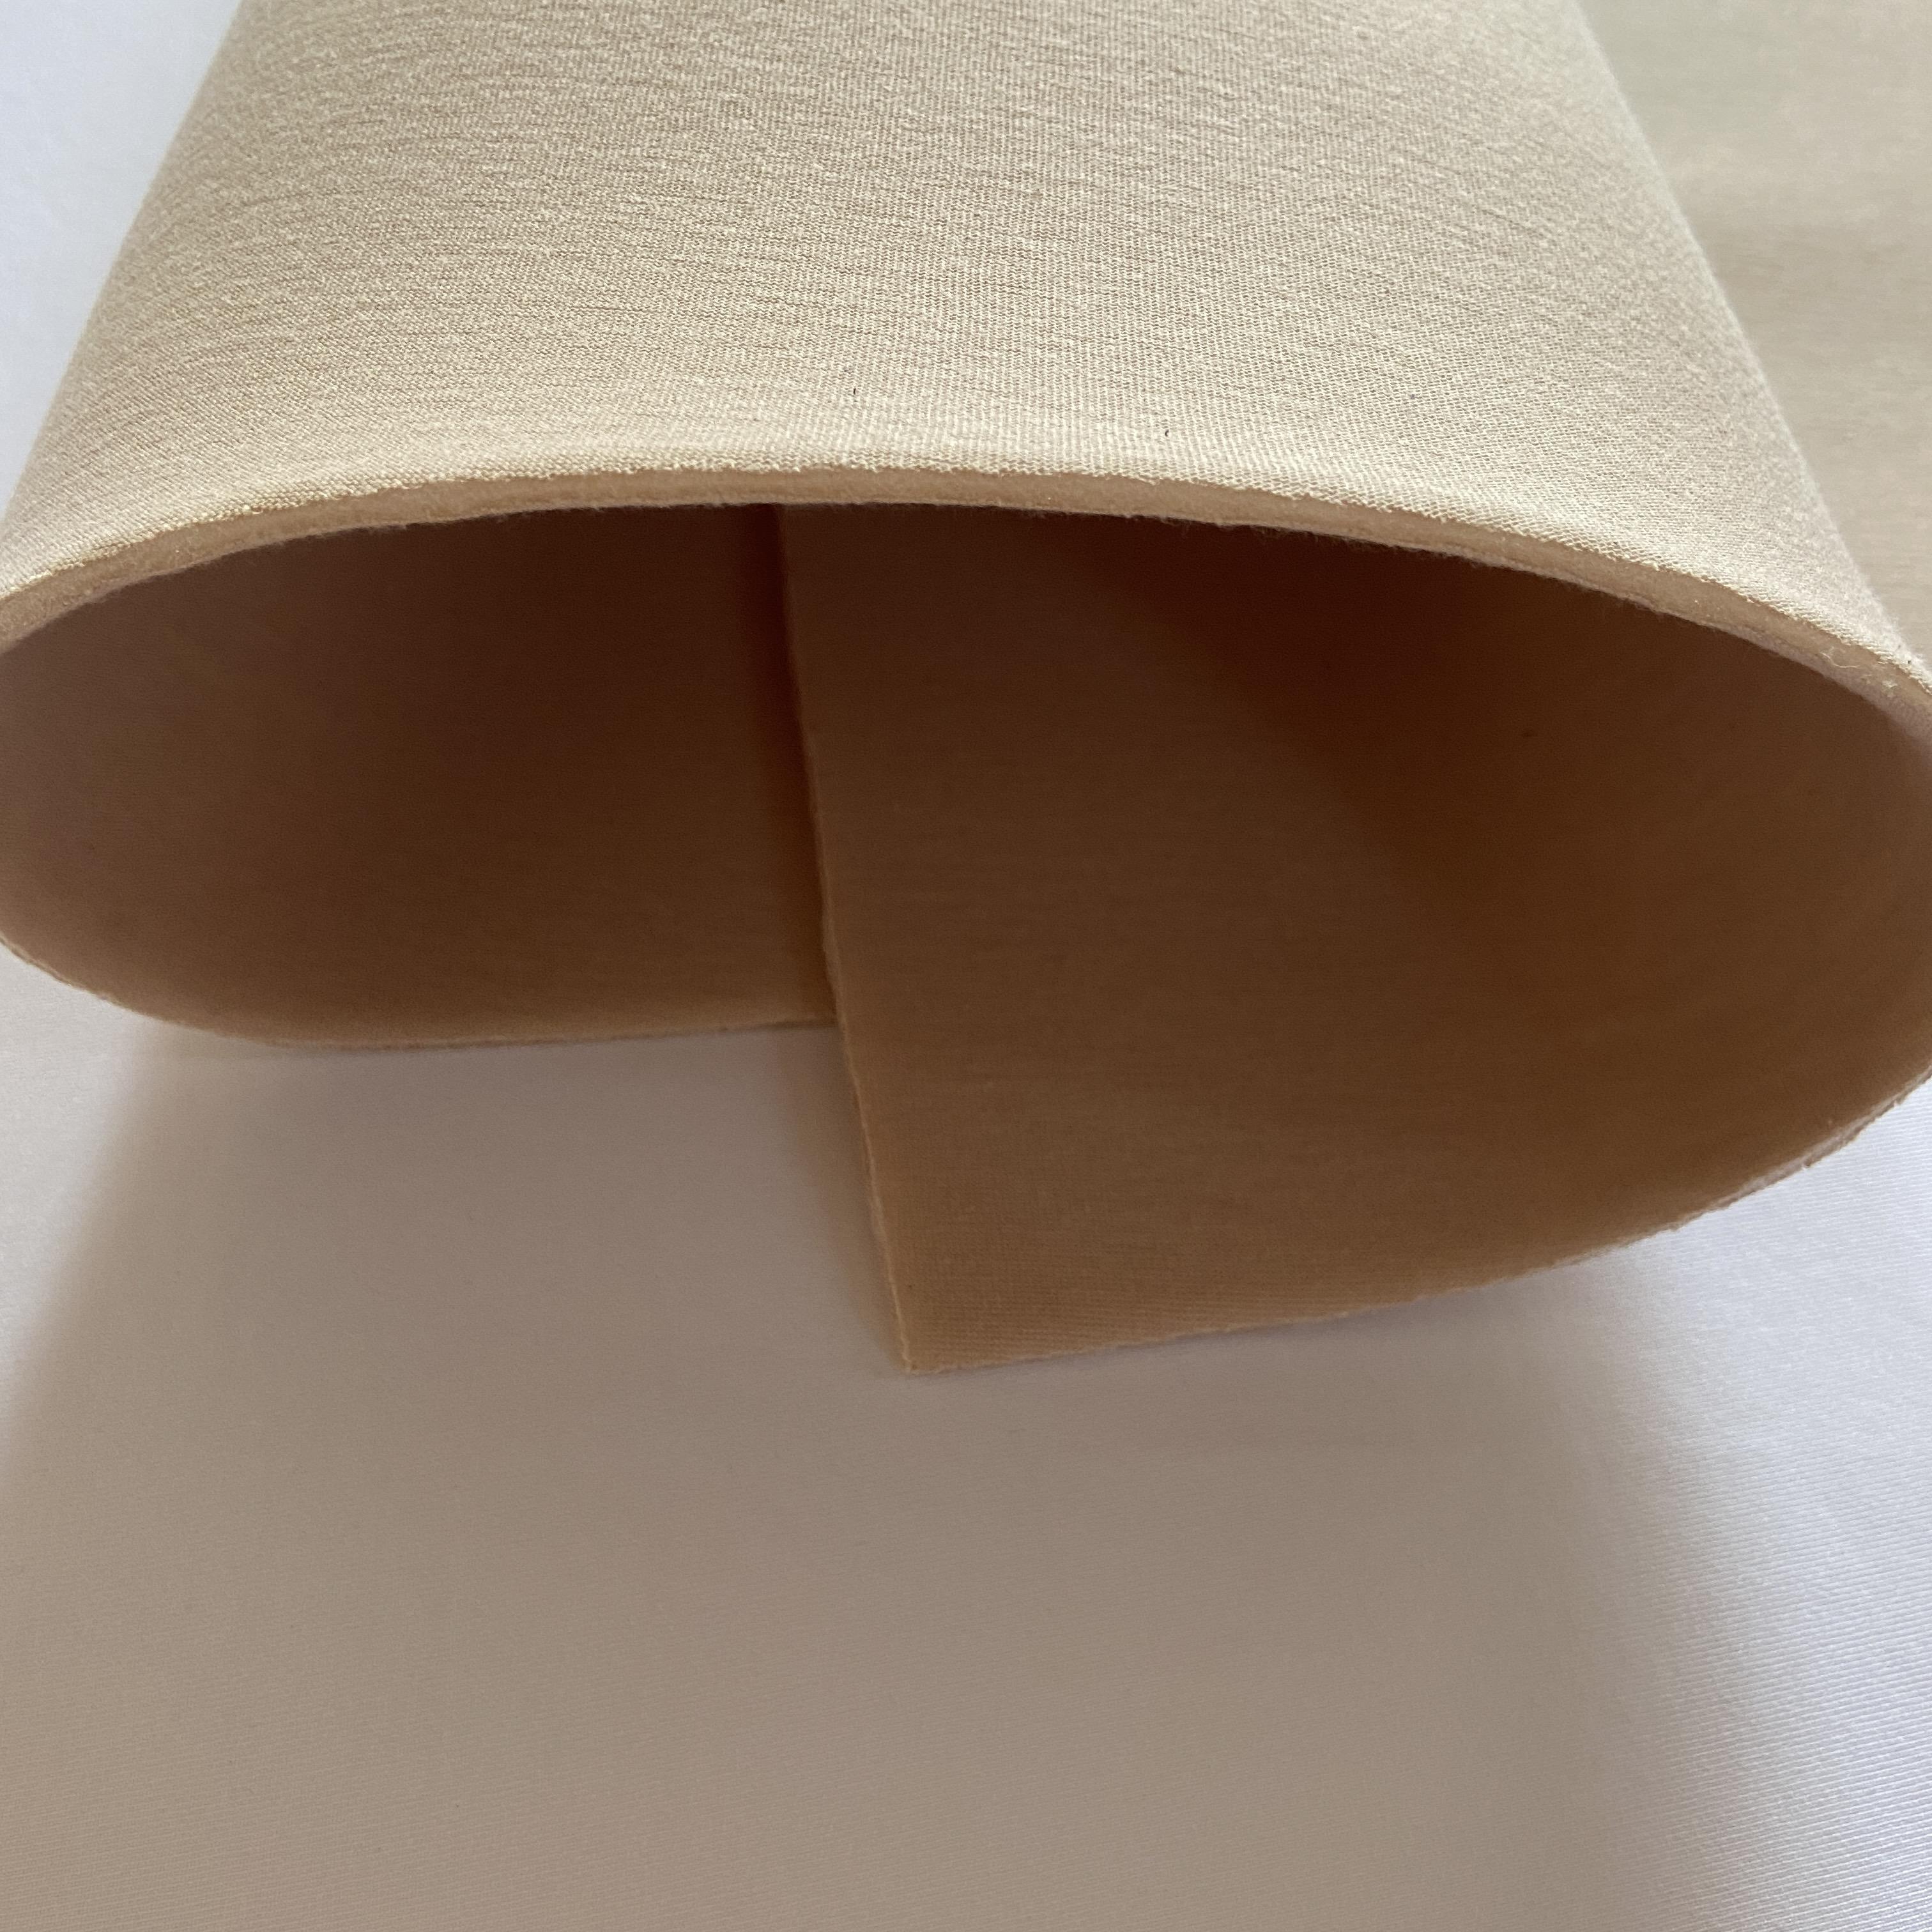 Bra Foam Padding Fabric - BEIGE Latte - 3.5mm - Cut & Sew - Cotton Faced -  60cm x 50cm, per piece